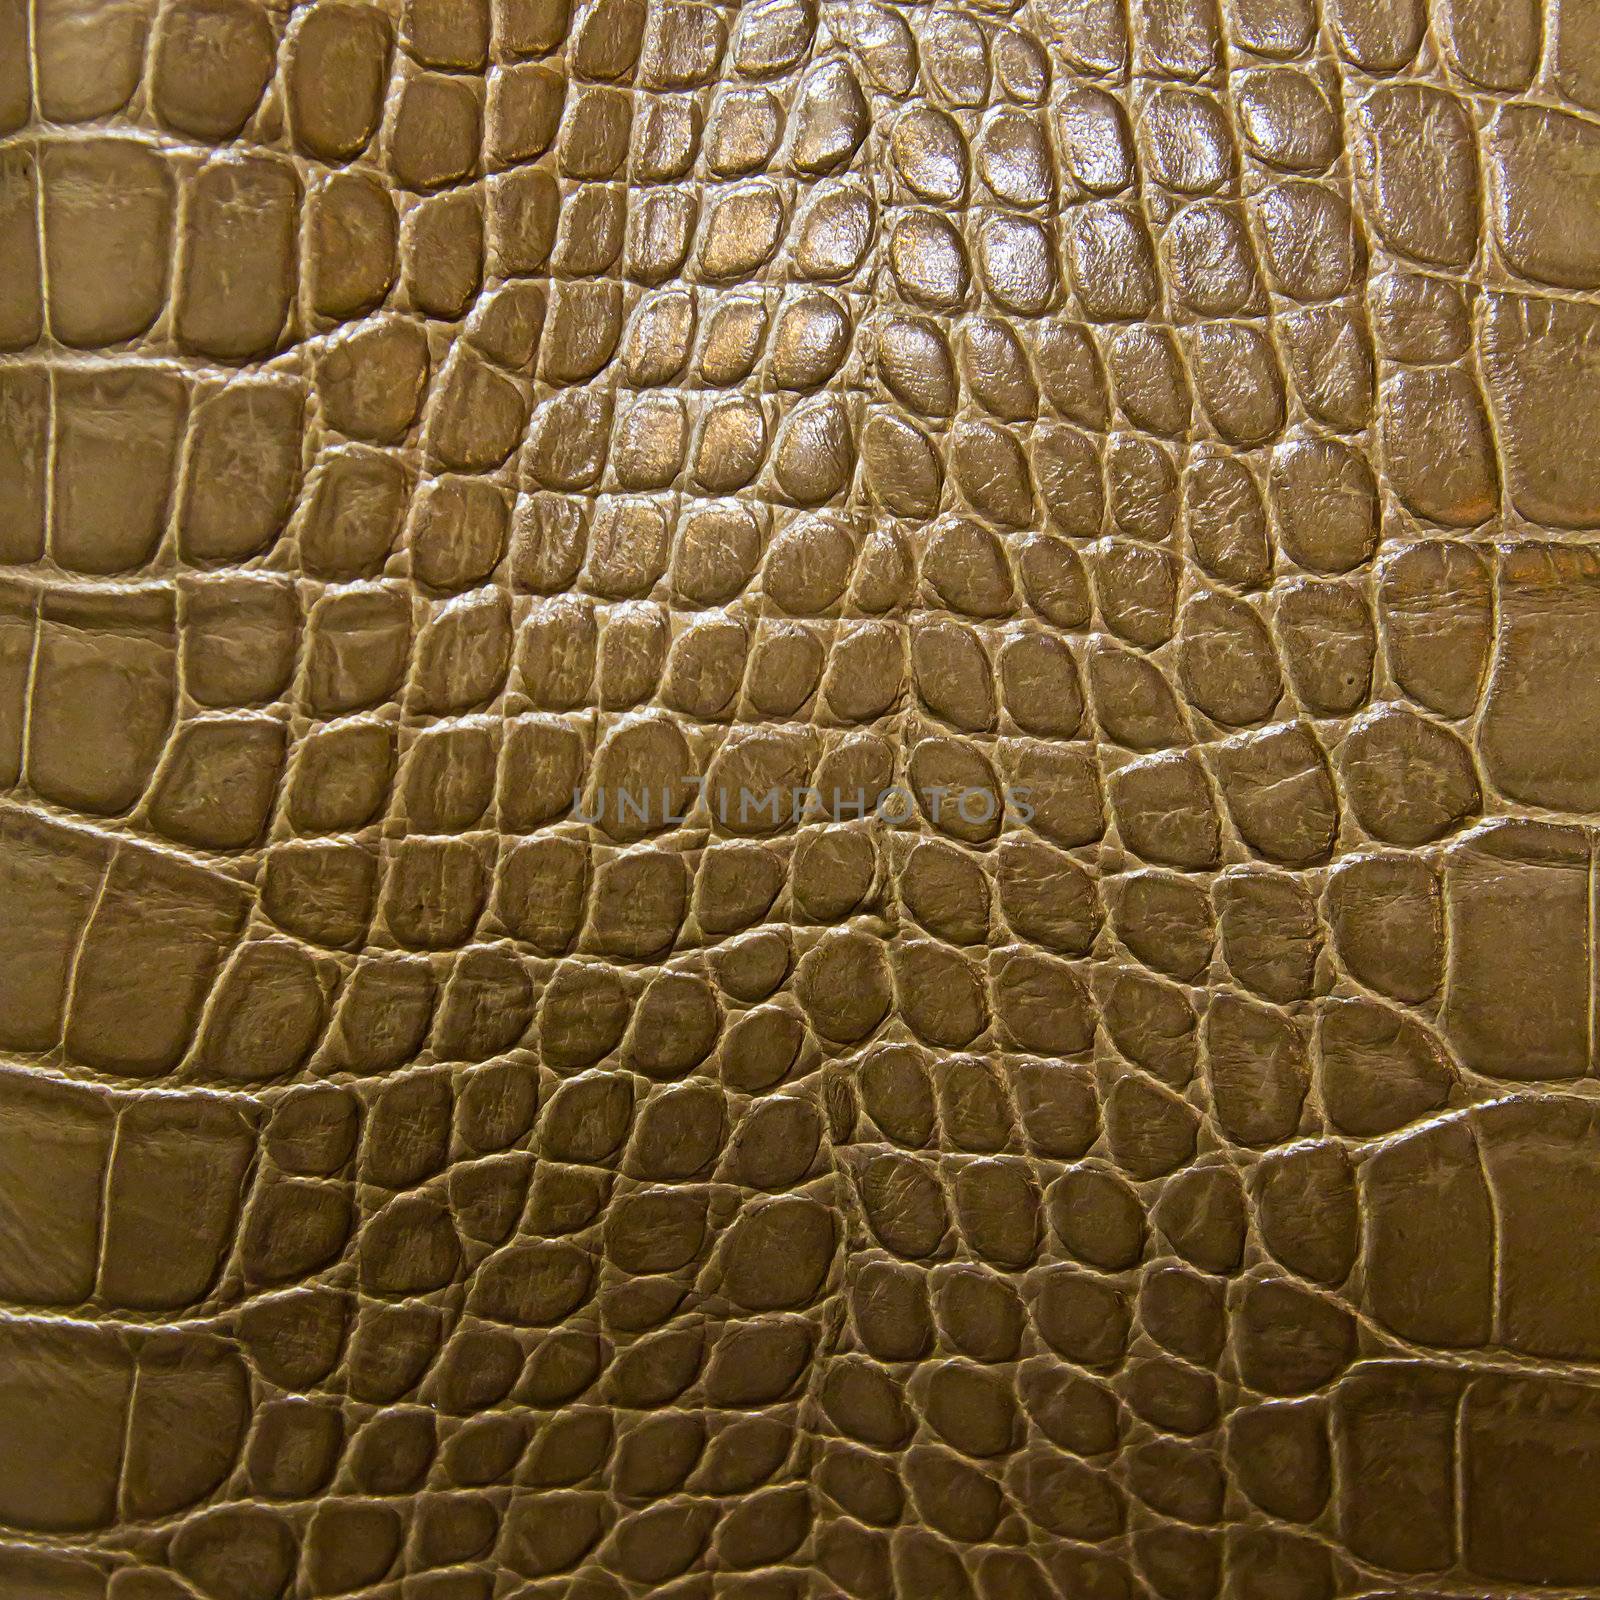 crocodile skin texture